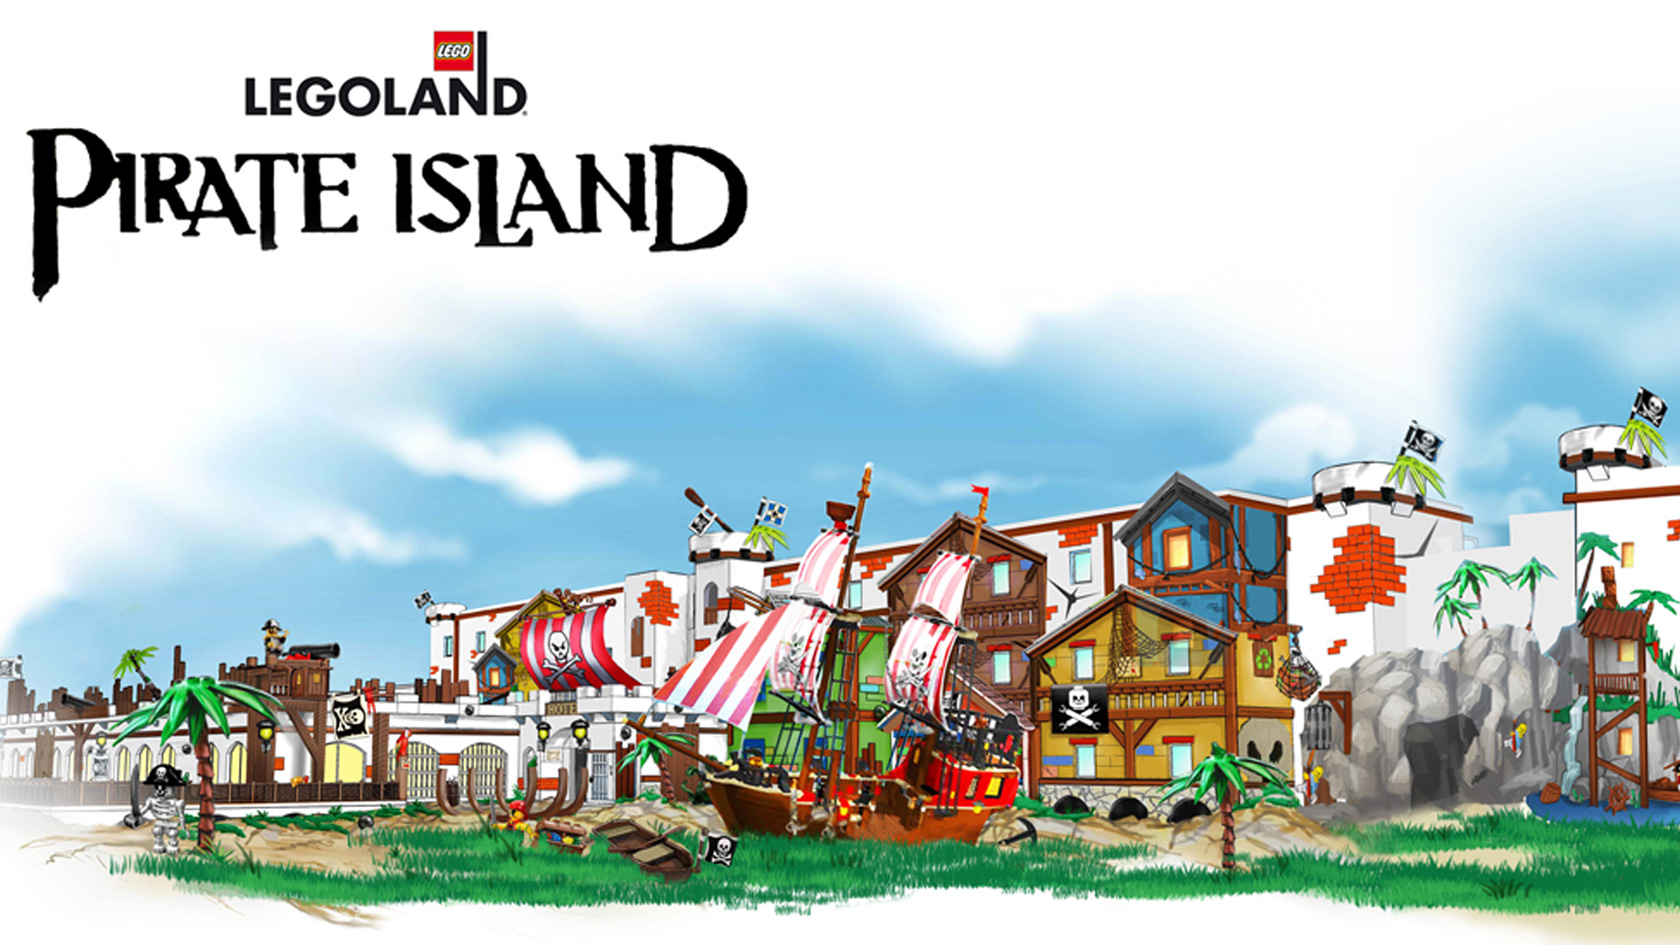 Pirate Island - LEGOLAND Deutschland - Teaser